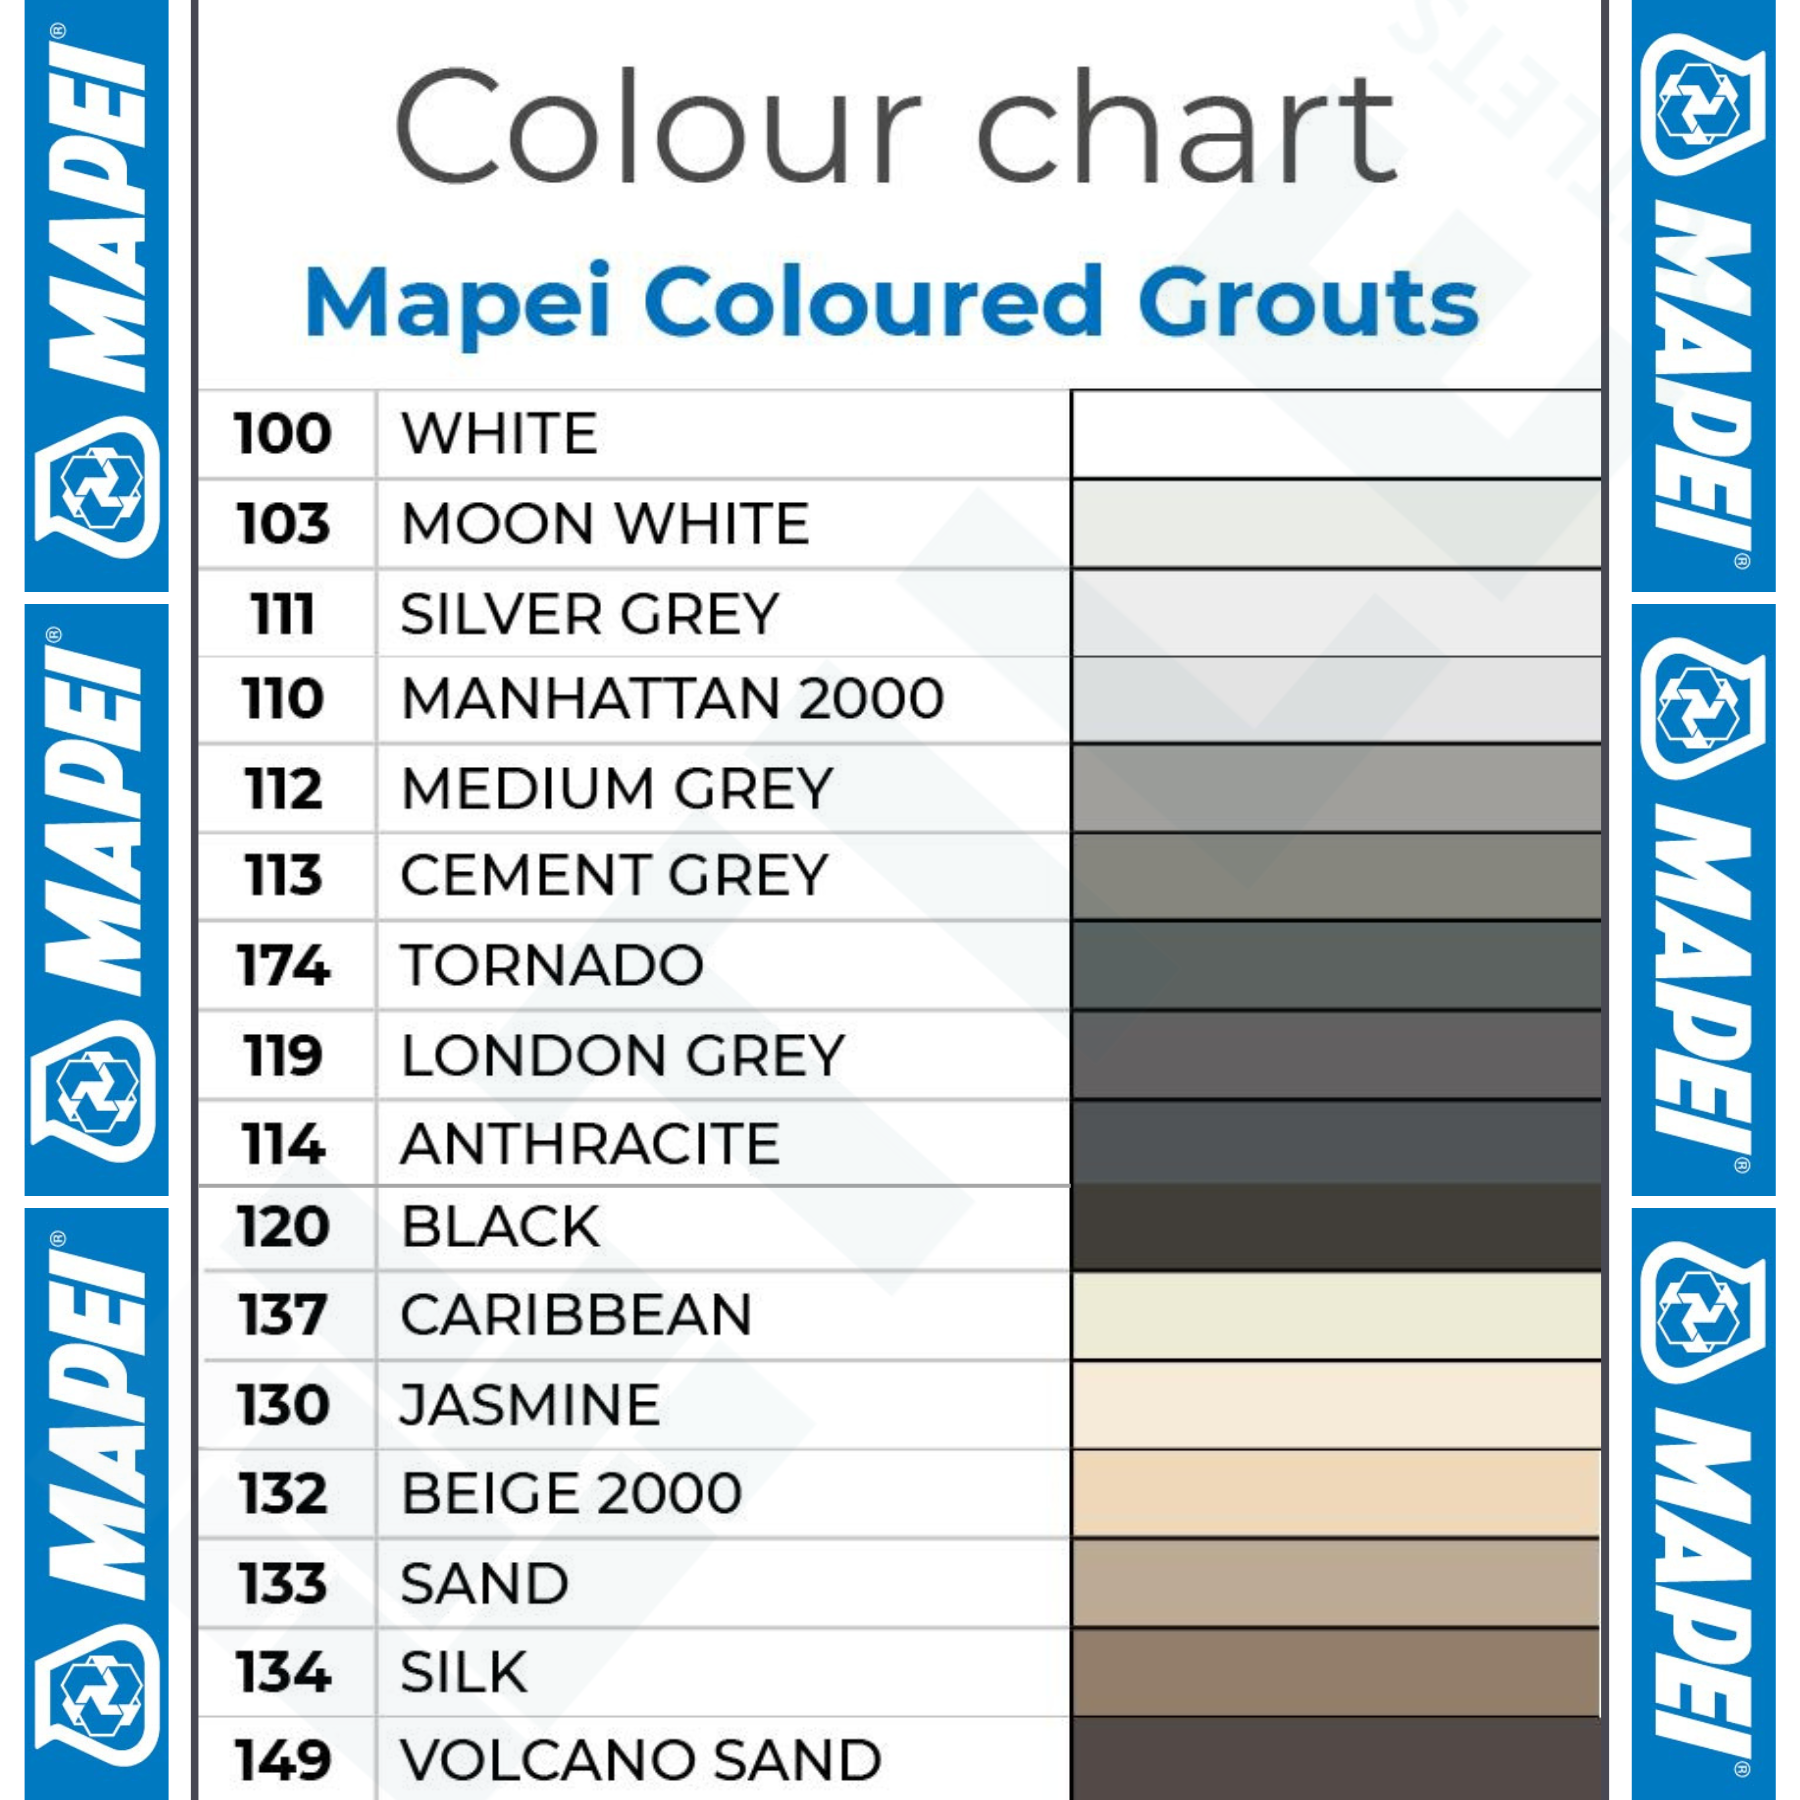 Mapei UltraColour Plus Black 120 Grout